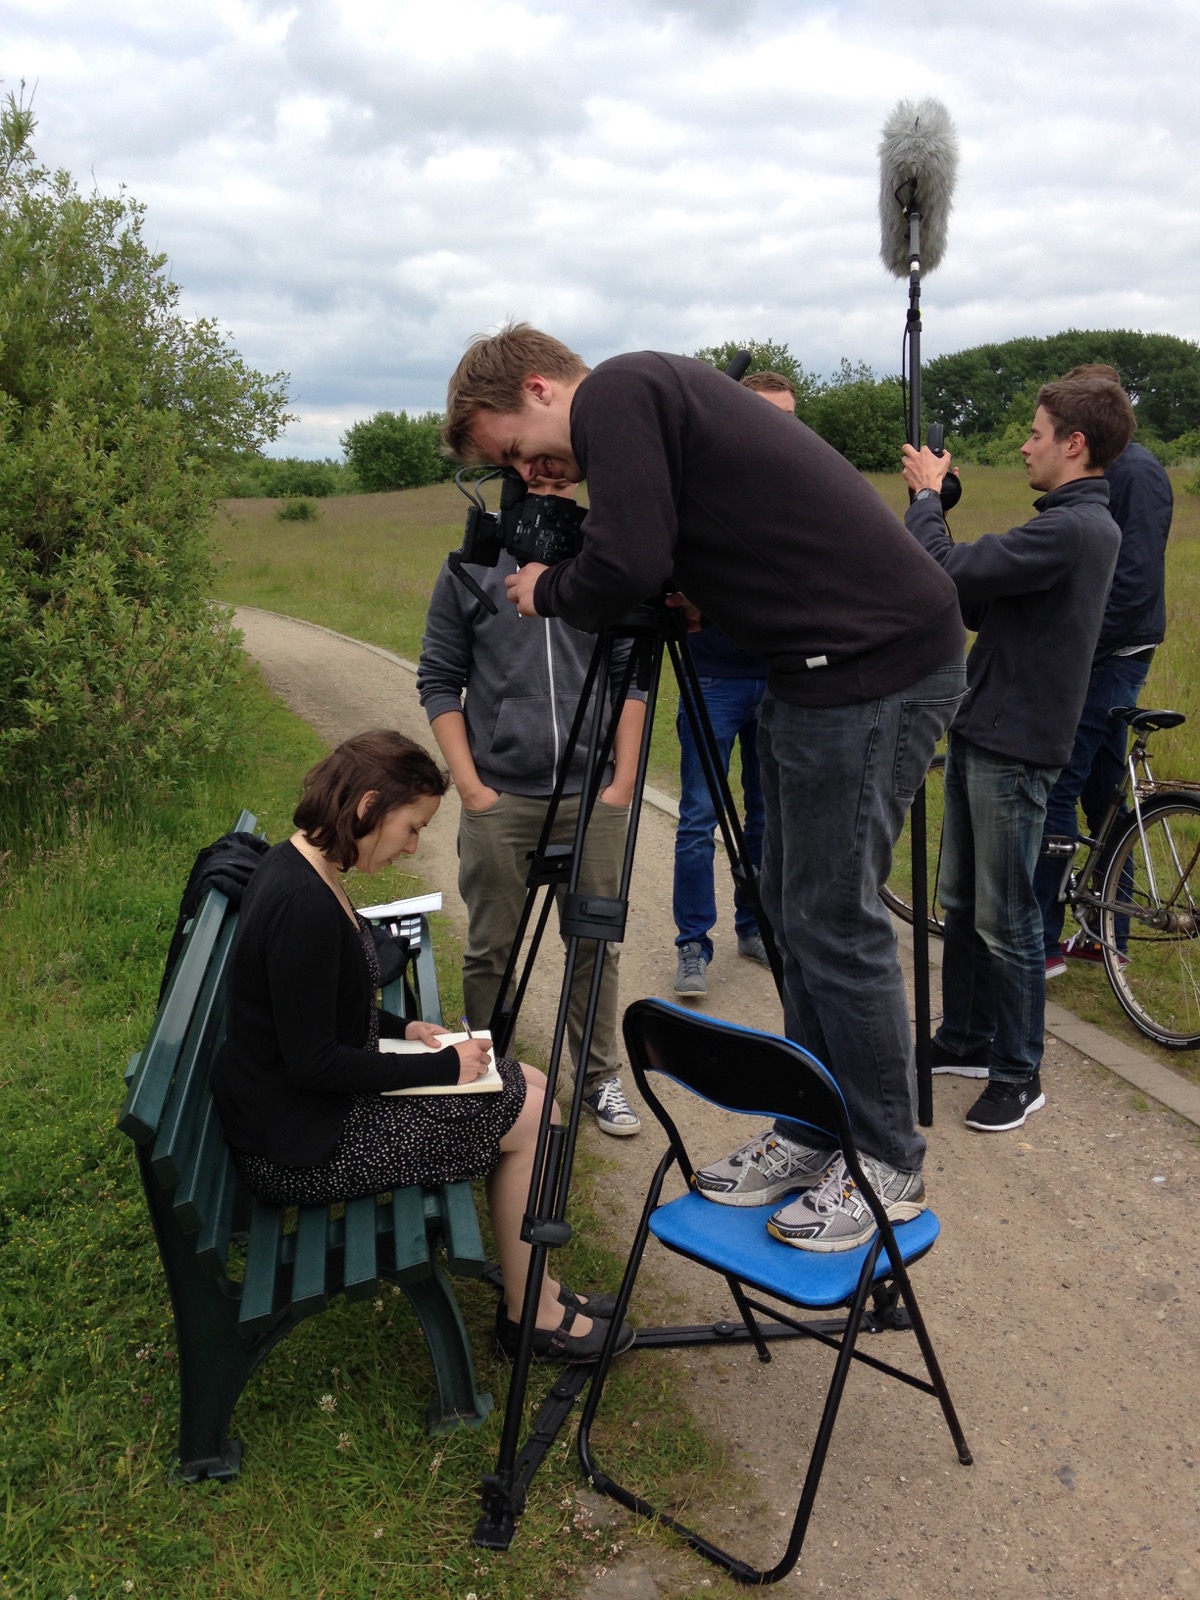 Kameramann Niels-Jonas filmt auf einem Stuhl stehen, wie eine Frau etwas auf einen Block schreibt.